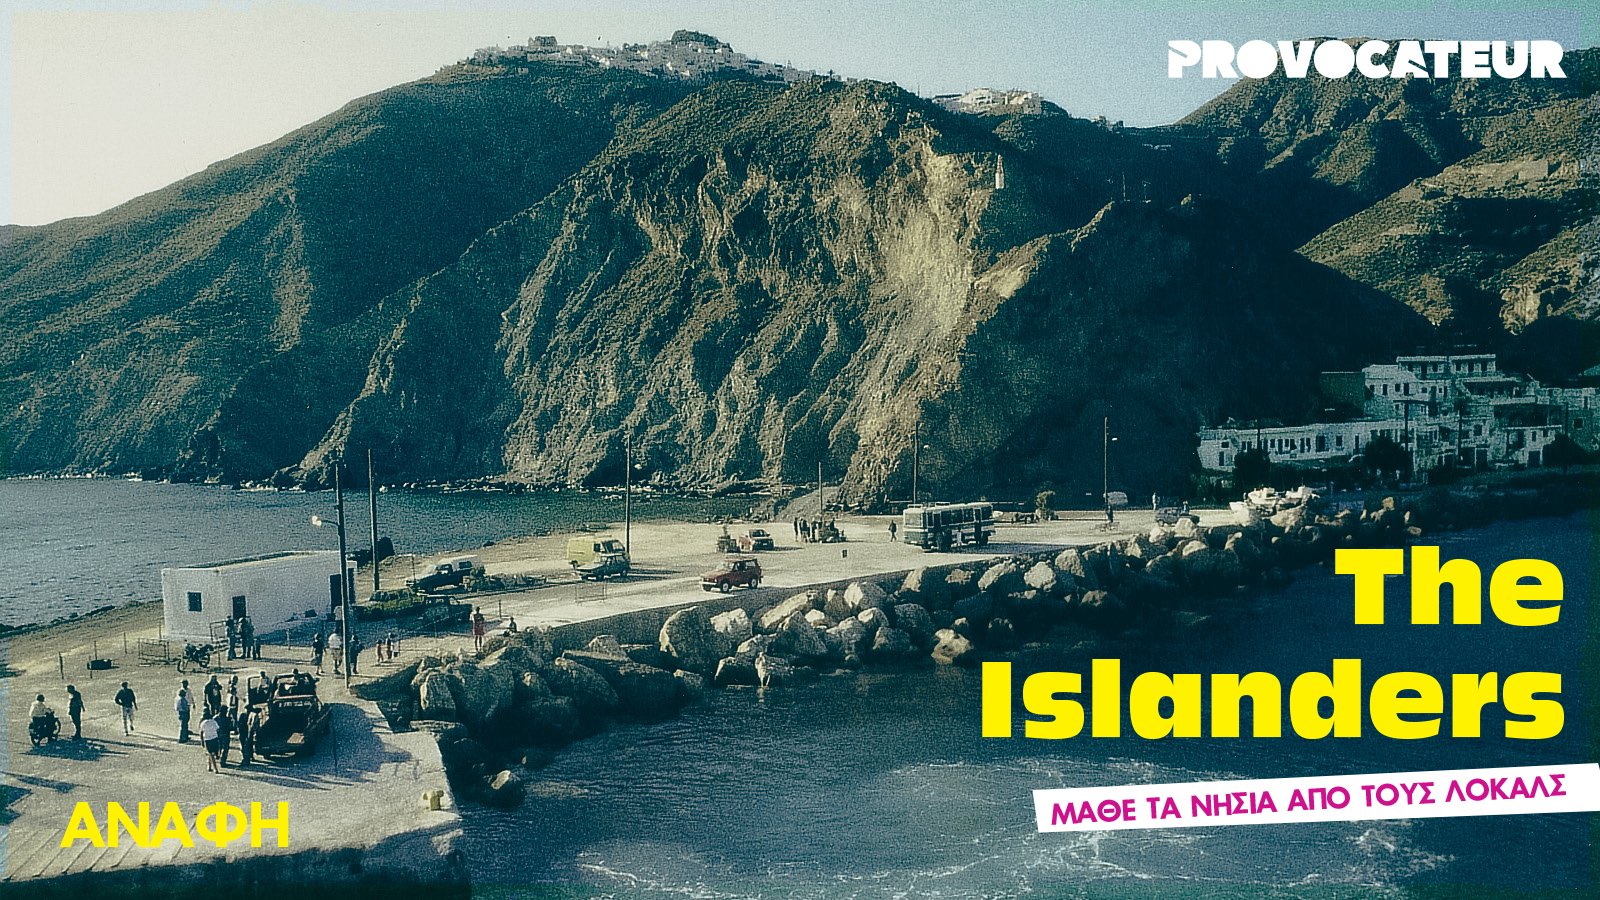 The Islanders | Μια σχεδόν Αναφιώτισσα απαντά σε 7 ερωτήσεις για τη νησάρα της